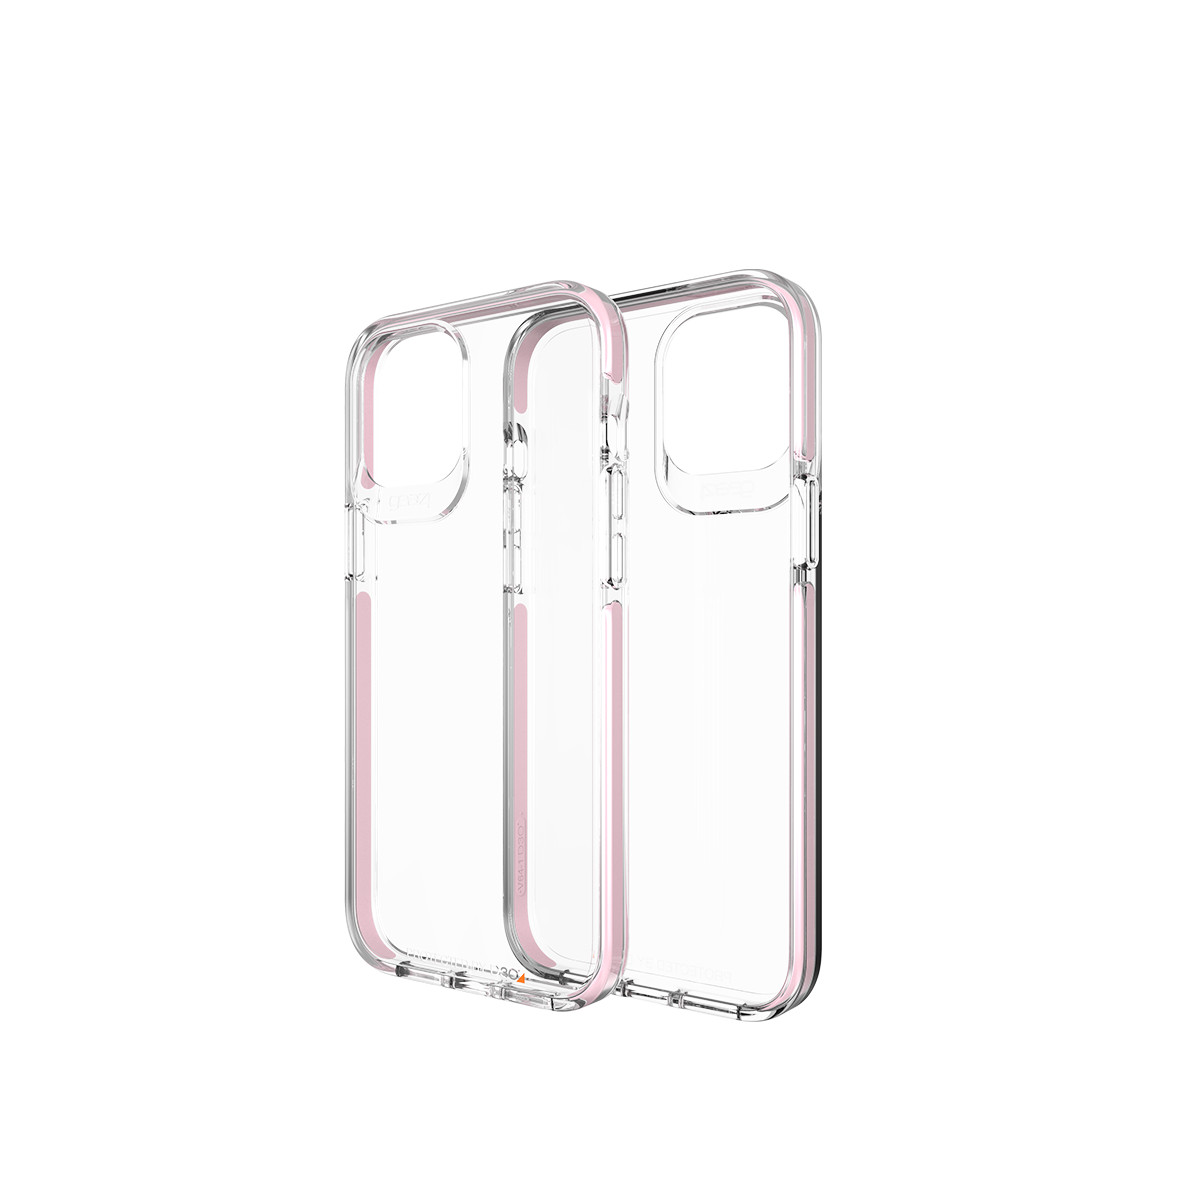 Ốp lưng Gear4 Piccadilly iPhone - Công nghệ chống sốc độc quyền D3O, kháng khuẩn, tương thích tốt với sóng 5G - Hàng chính hãng - Rose Gold - iPhone 12/12 Pro